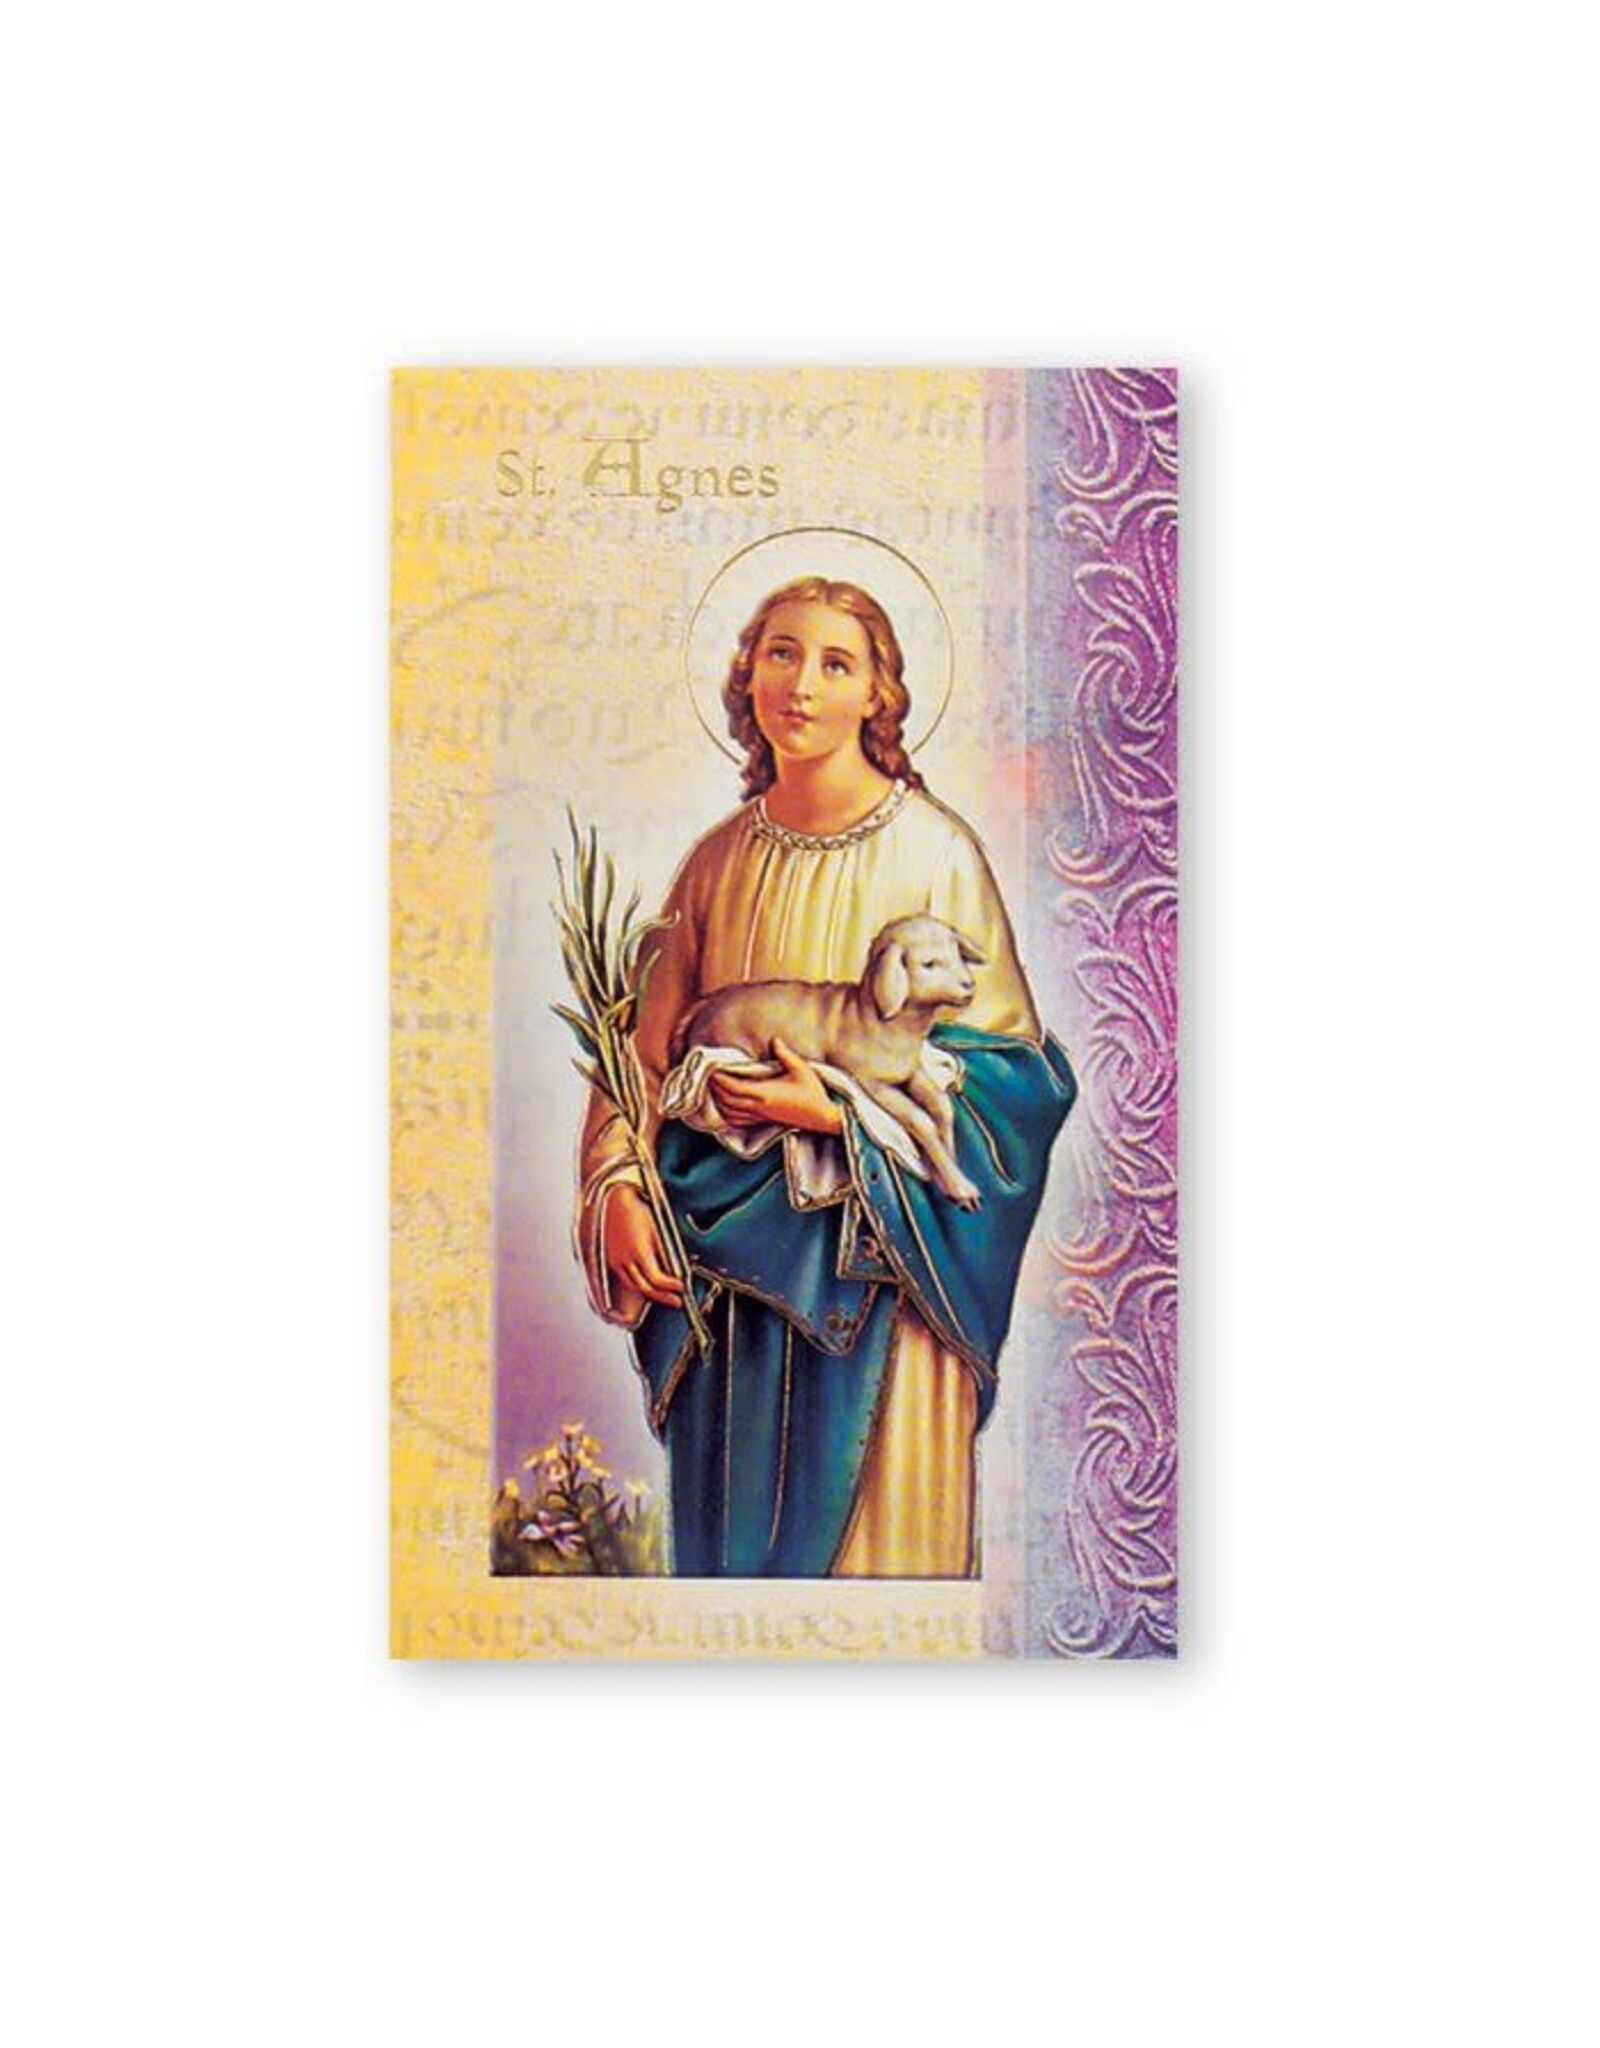 Hirten Saint Biography Folder - St. Agnes